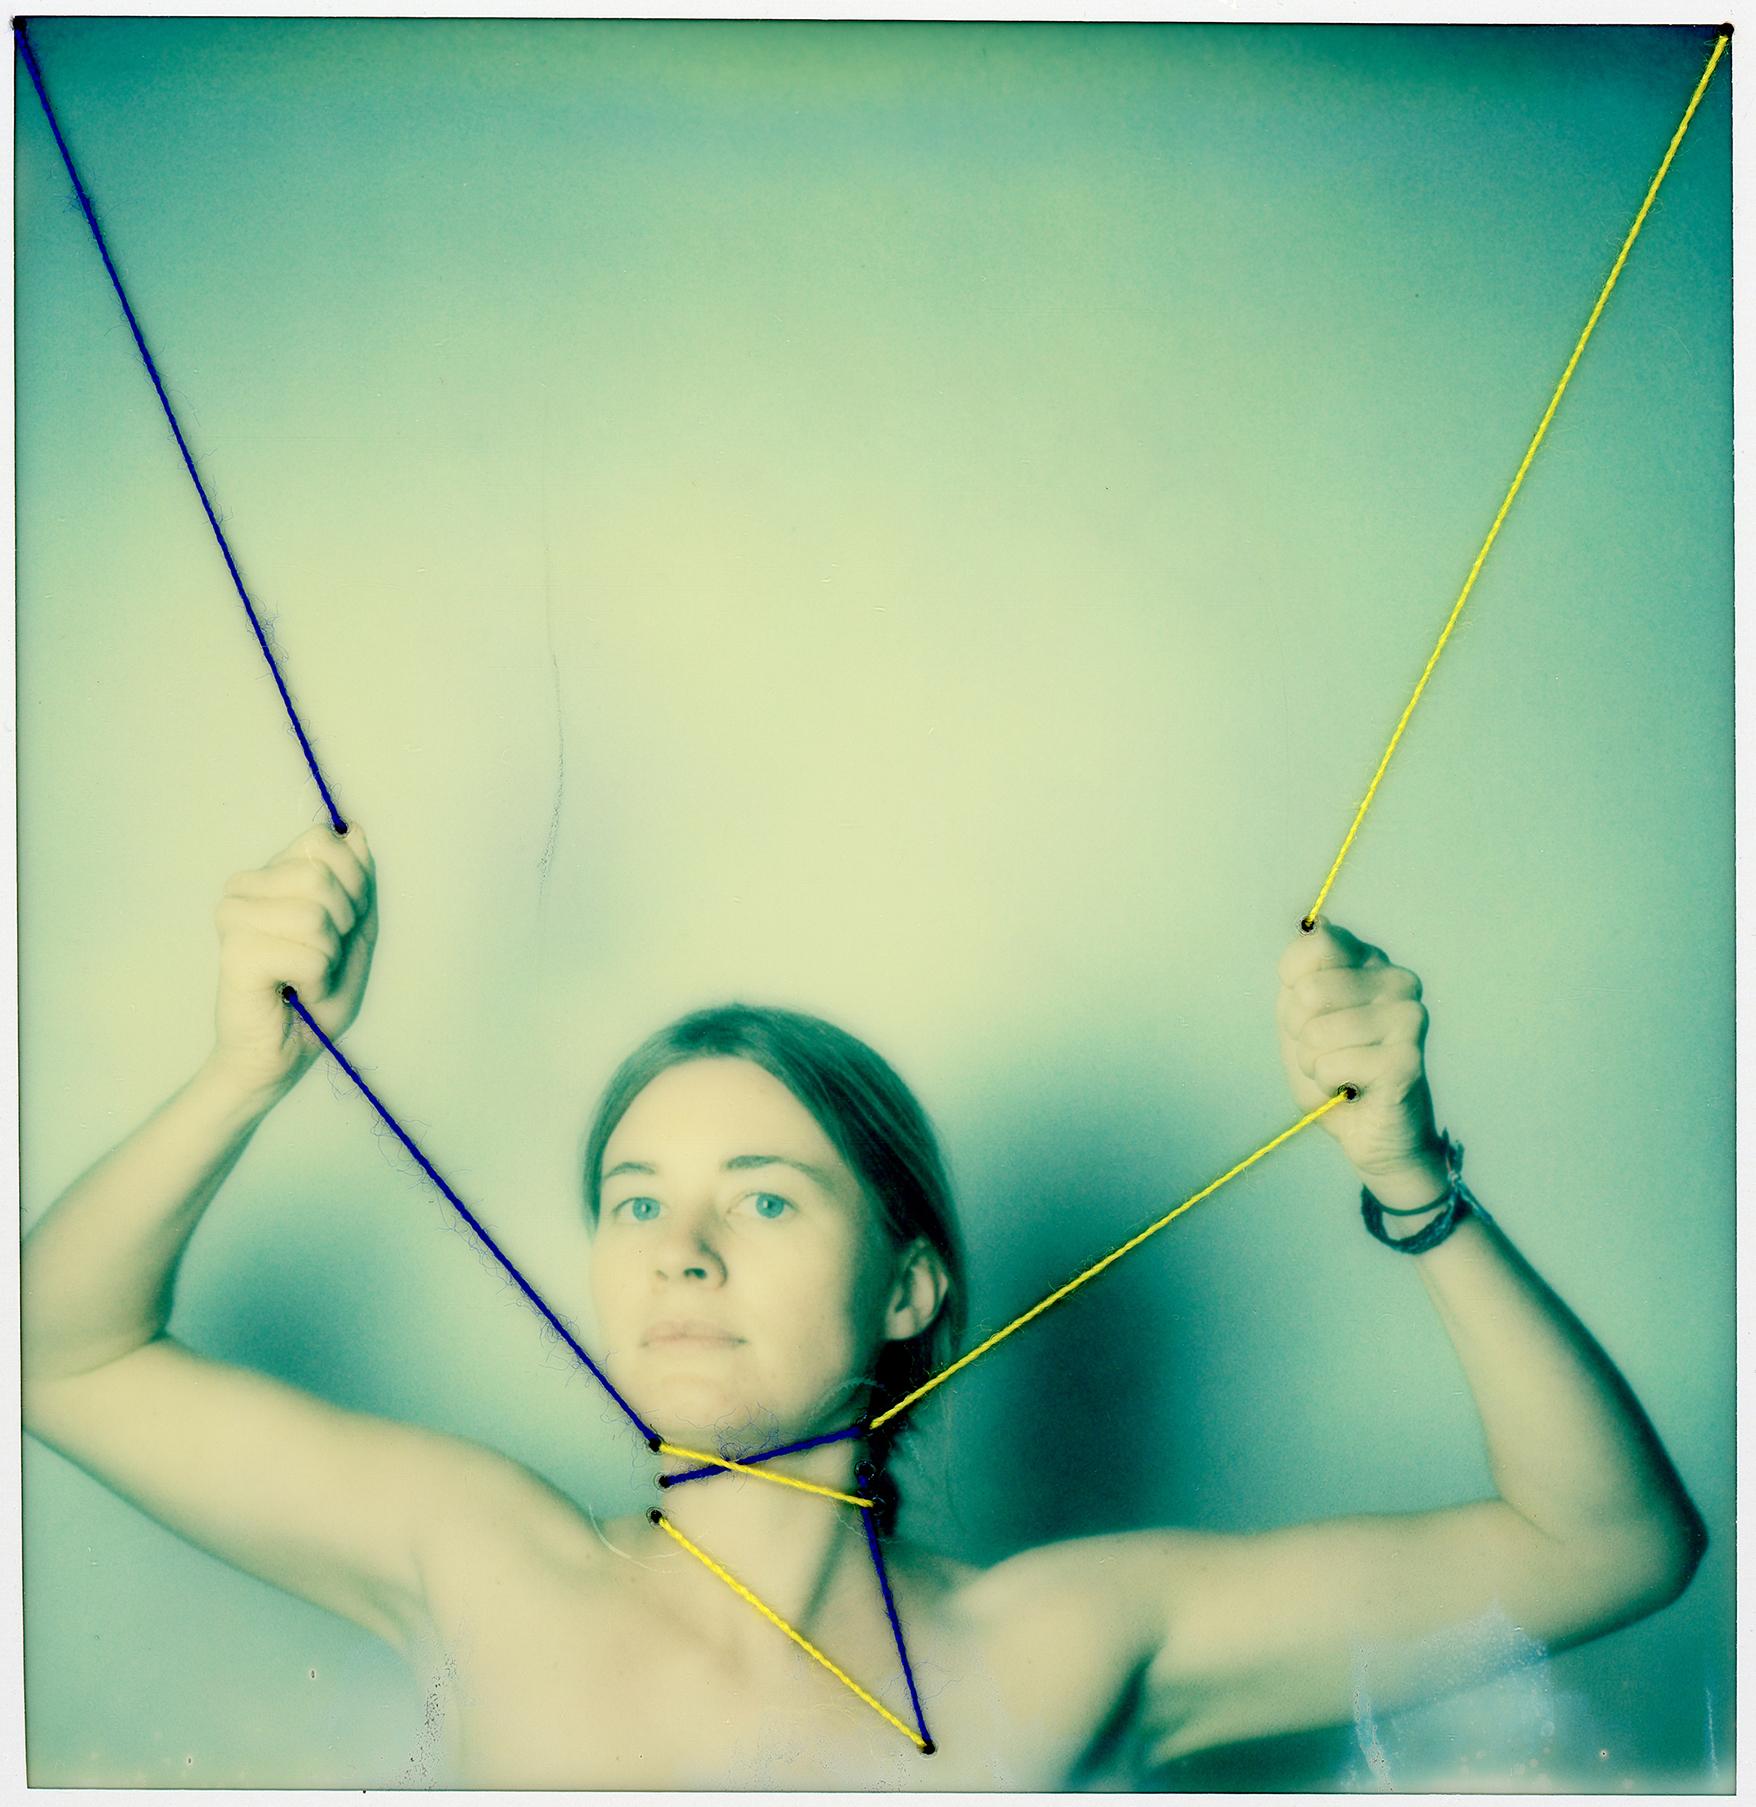 Ataduras - Contemporary, Conceptual, Polaroid, 21st Century, Color